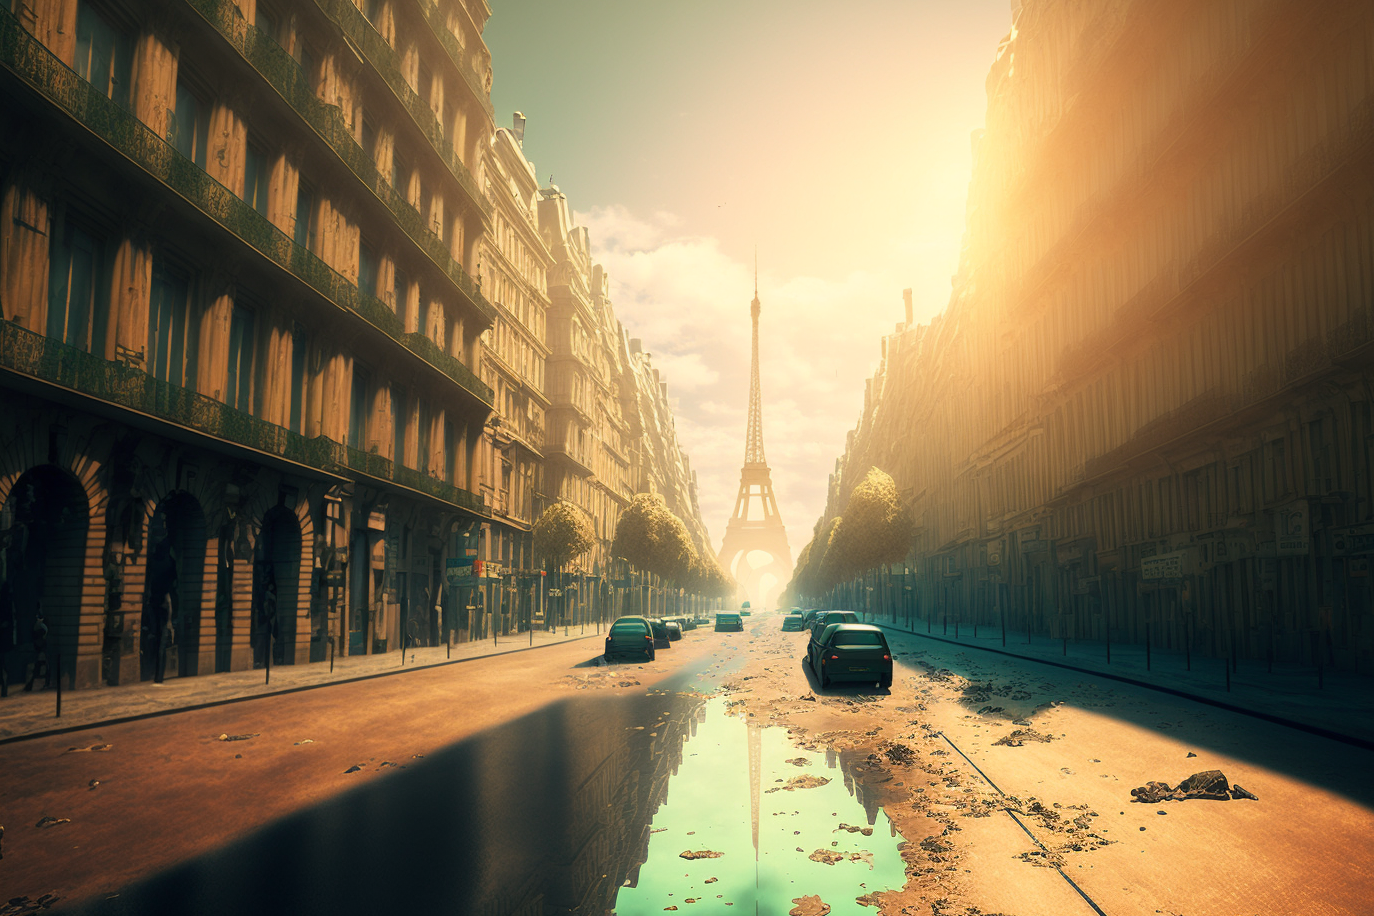 Lezard_des_Mots_a_mirage_in_the_streets_of_dystopian_Paris_its__33823c6f-96bc-4fb8-b099-ab104fec293f